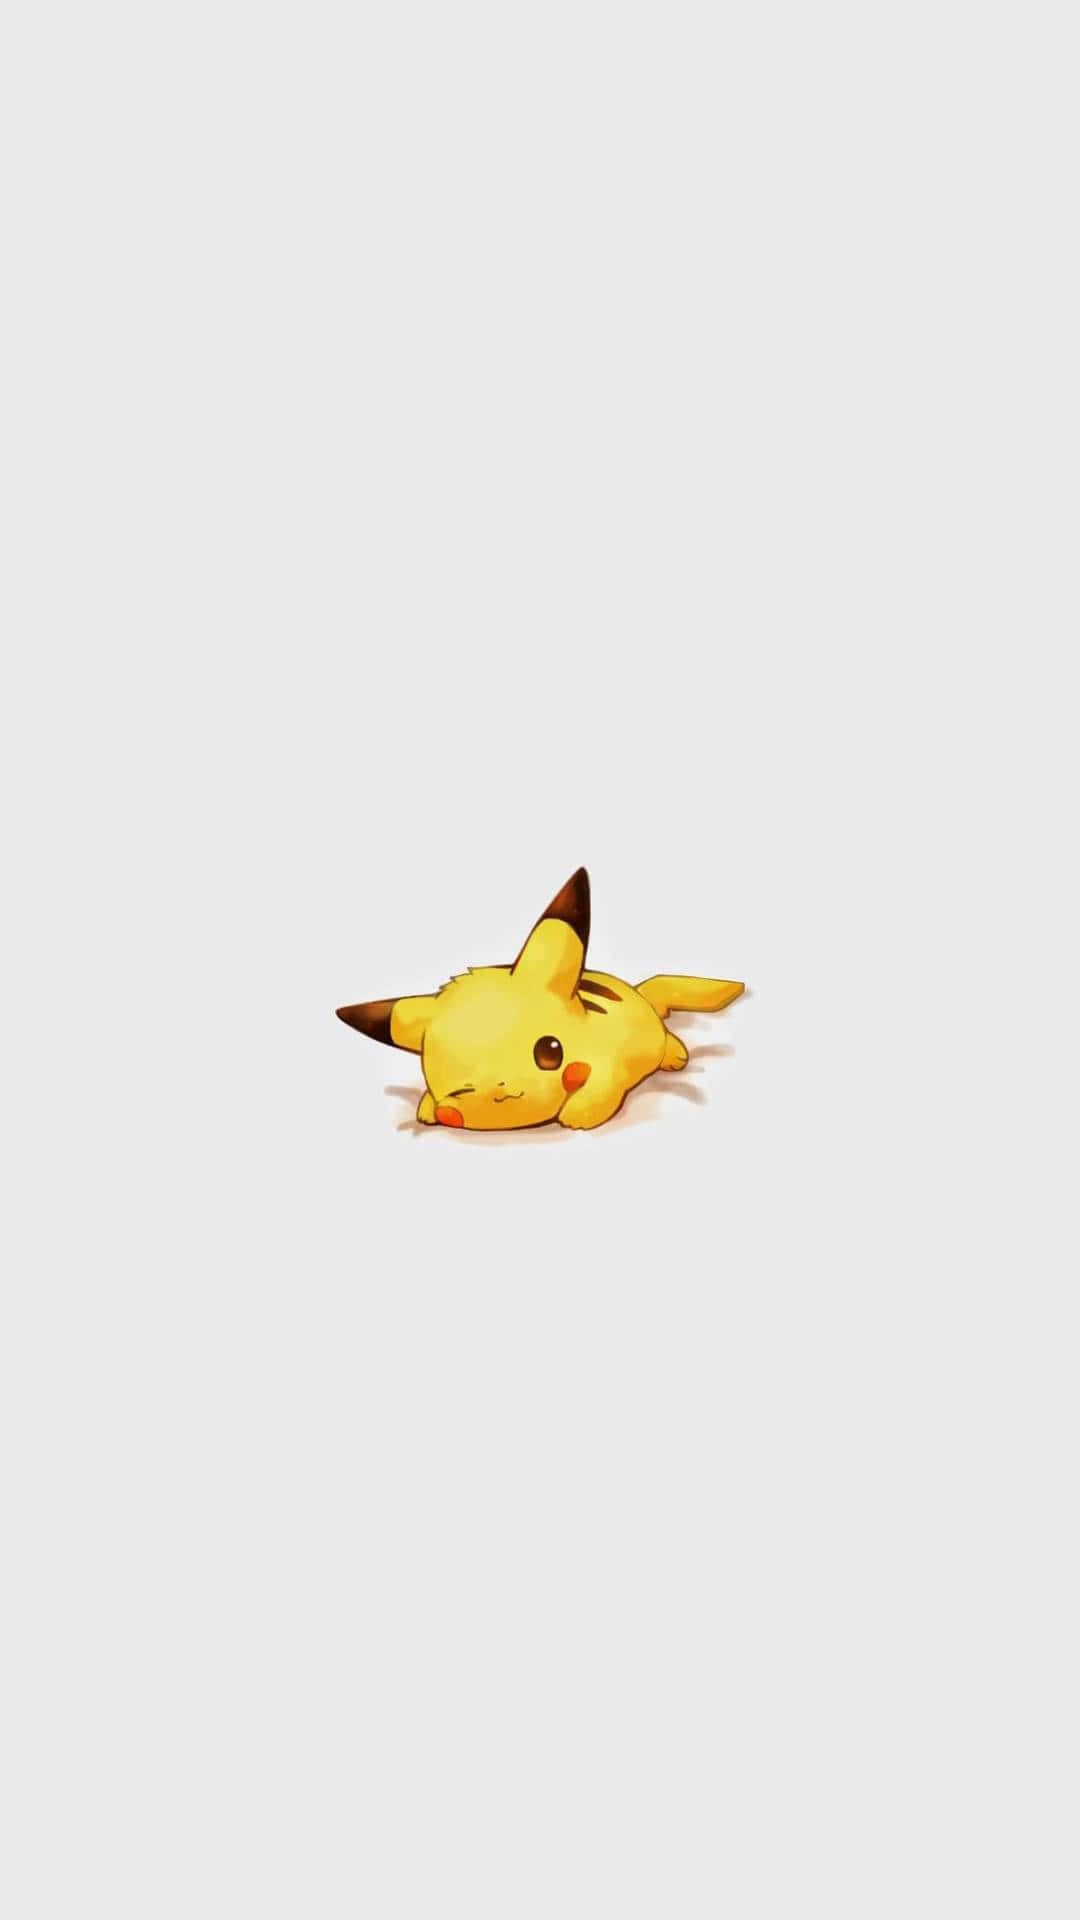  Pokémon Hintergrundbild 1080x1920. Free Pokemon Aesthetic Wallpaper Downloads, Pokemon Aesthetic Wallpaper for FREE